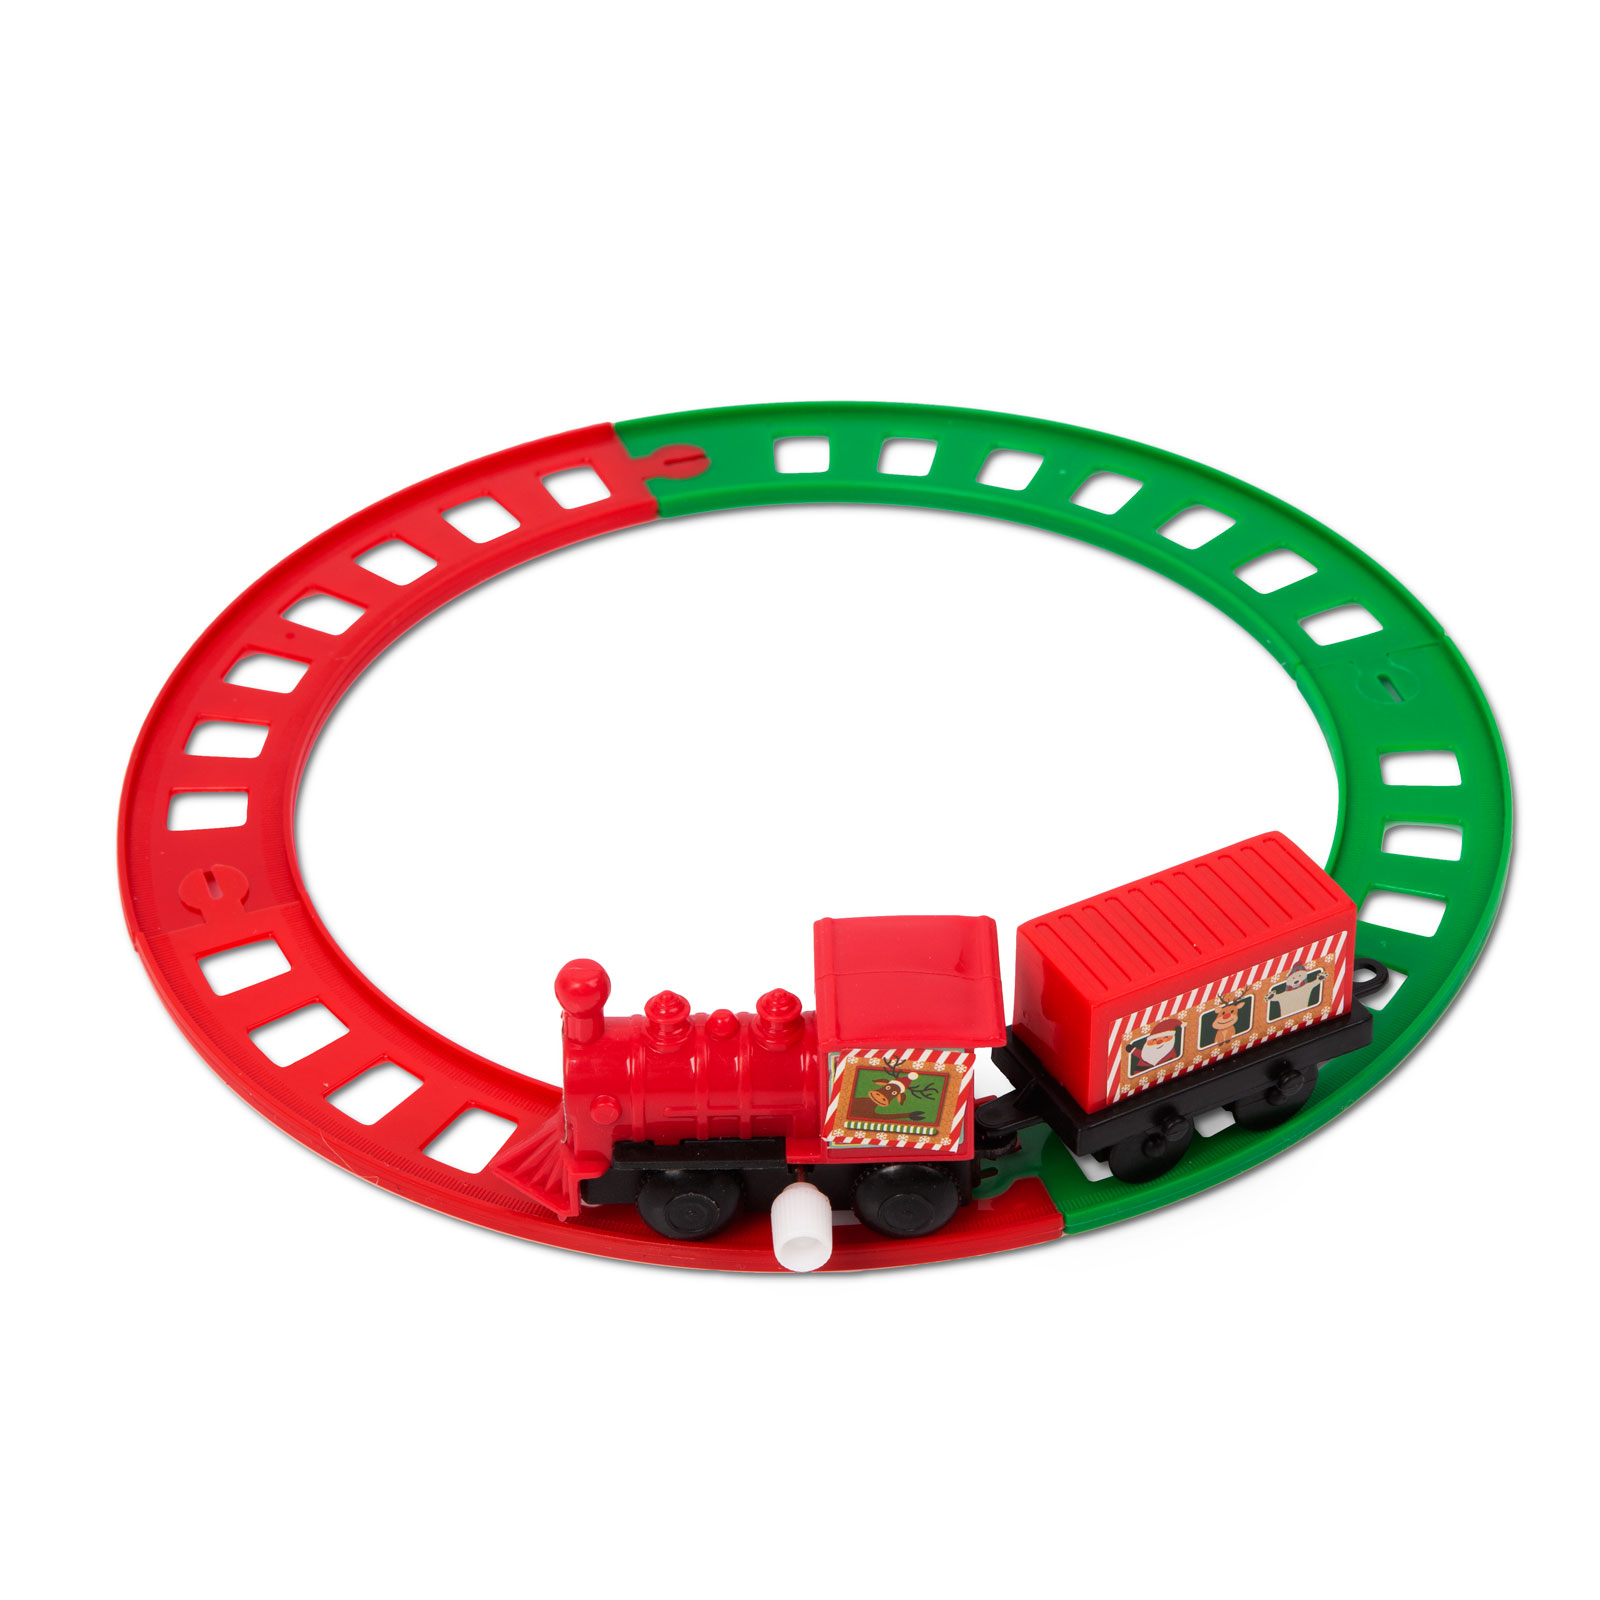 Tren de Craciun - cu cheita - rosu verde - 20 cm